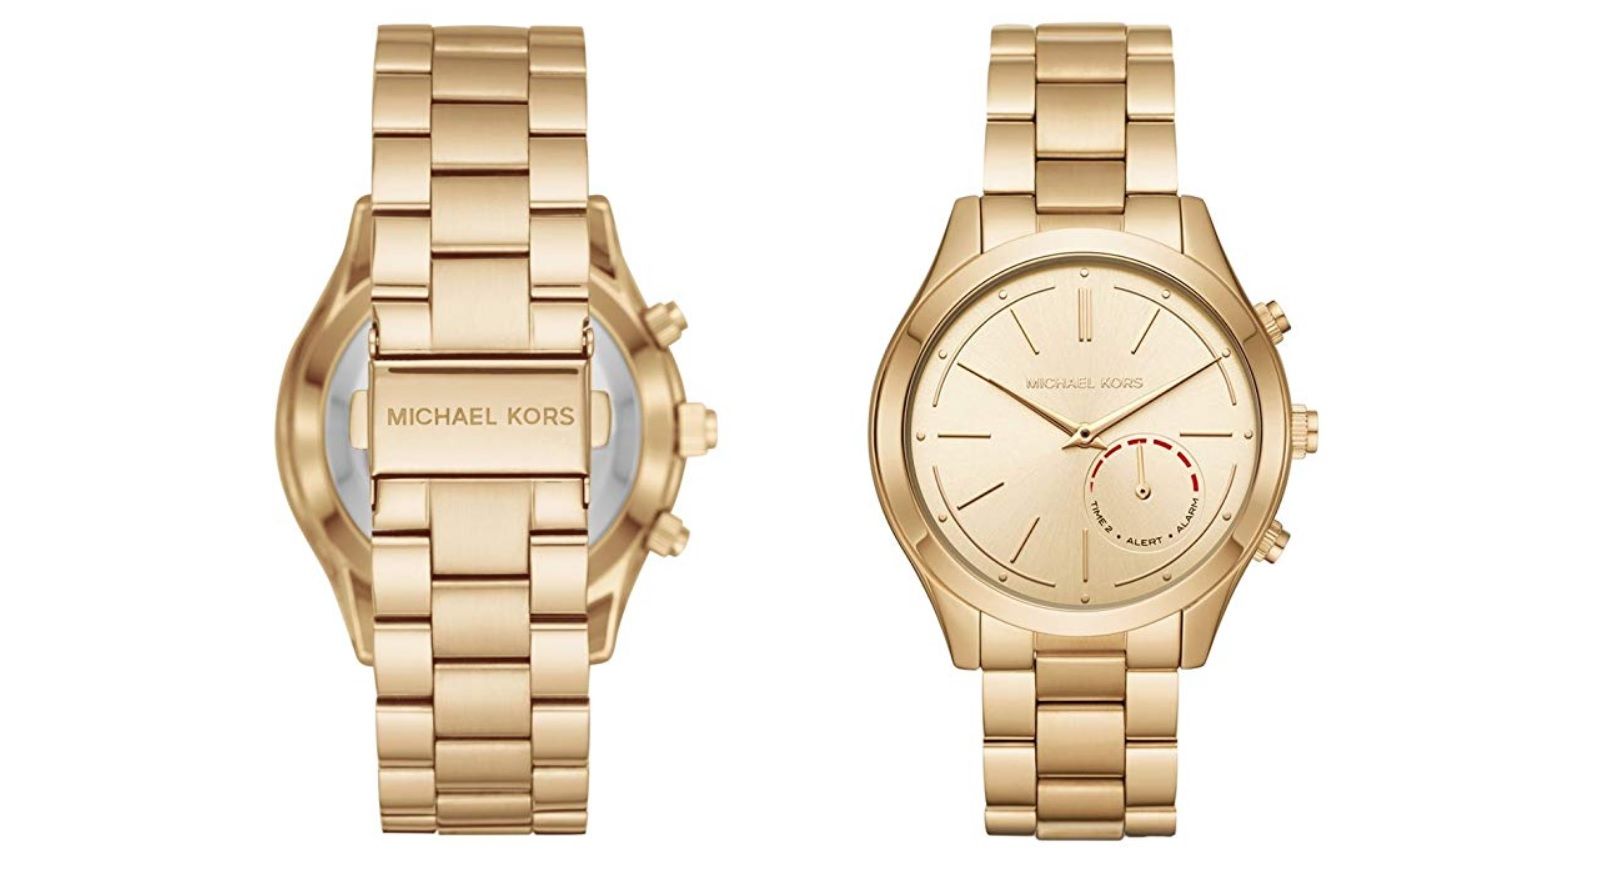 ¡Chollo! Reloj Michael Kors por sólo 139,50€ ¡Ahorro de 109,50€!